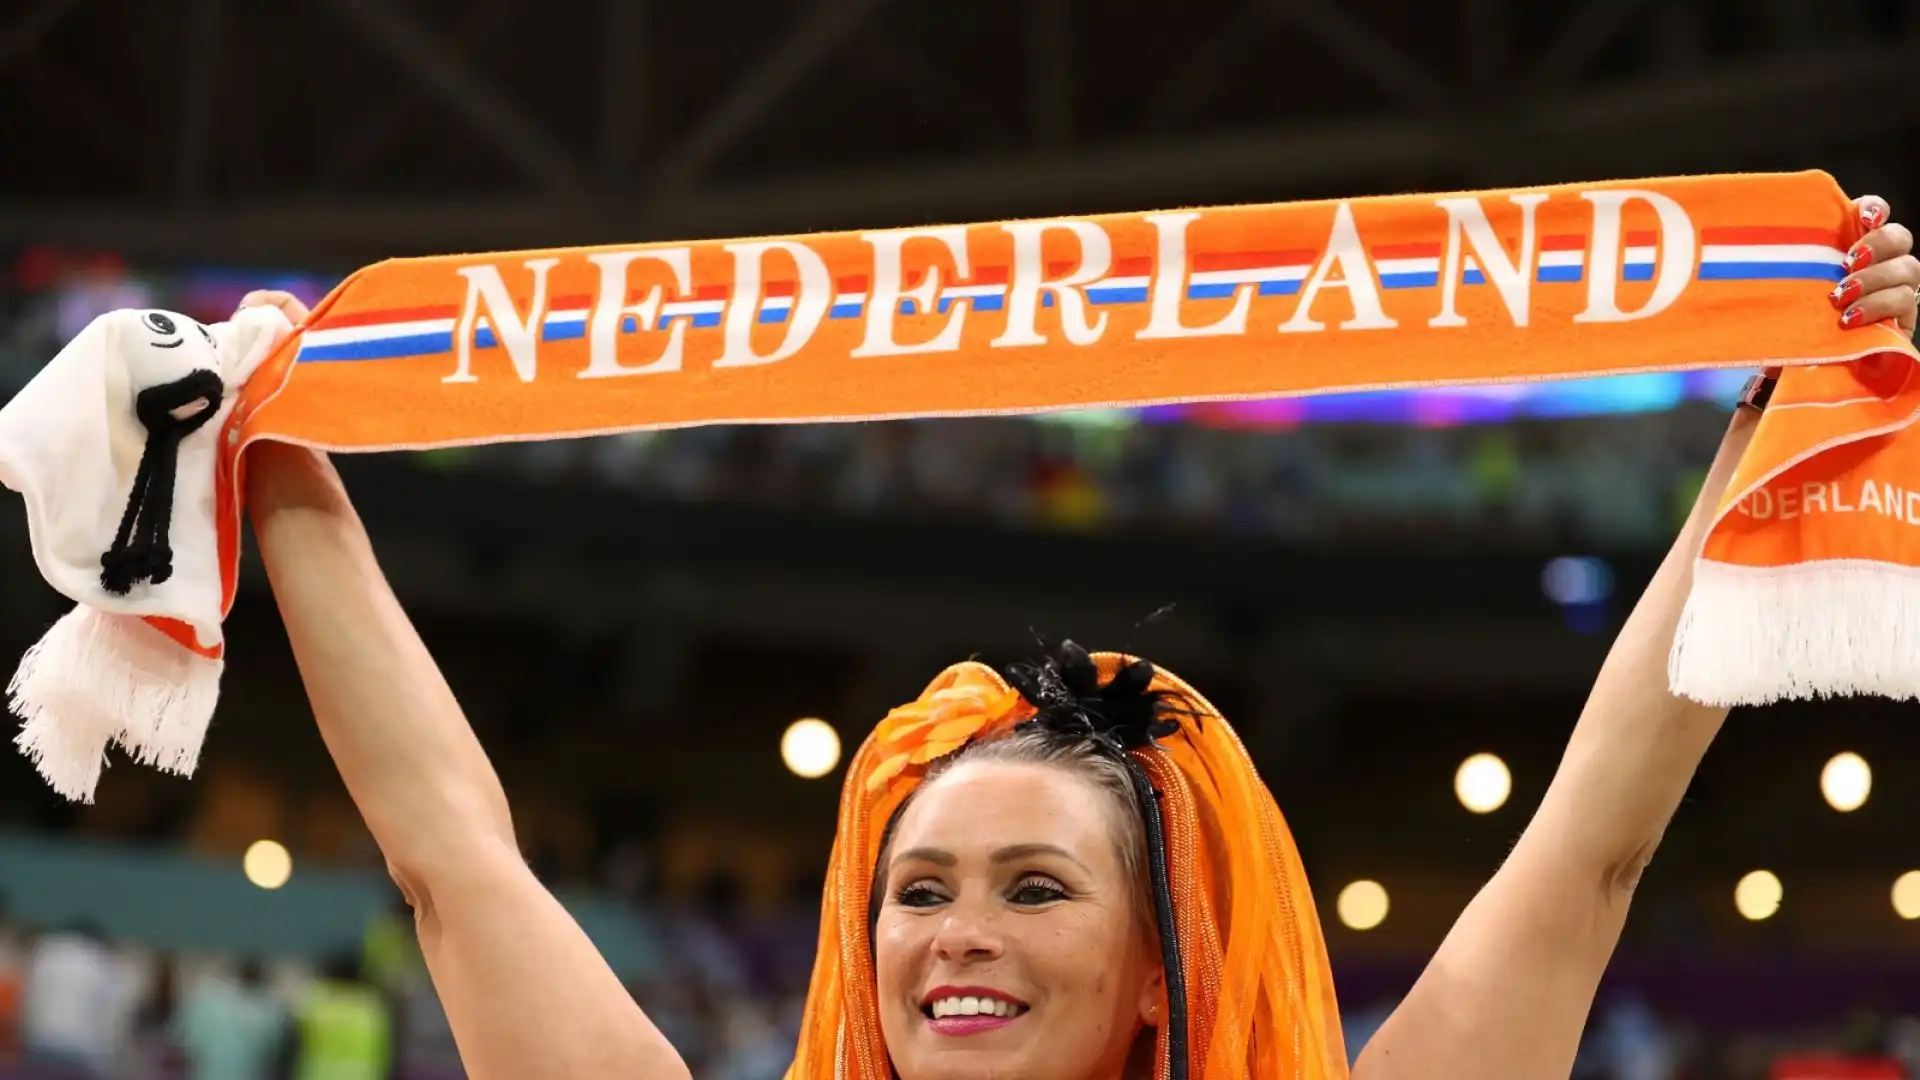 Altra possibile scelta è quella della tradizionale sciarpa, da accompagnare ovviamente alla maglia della nazionale Oranje.